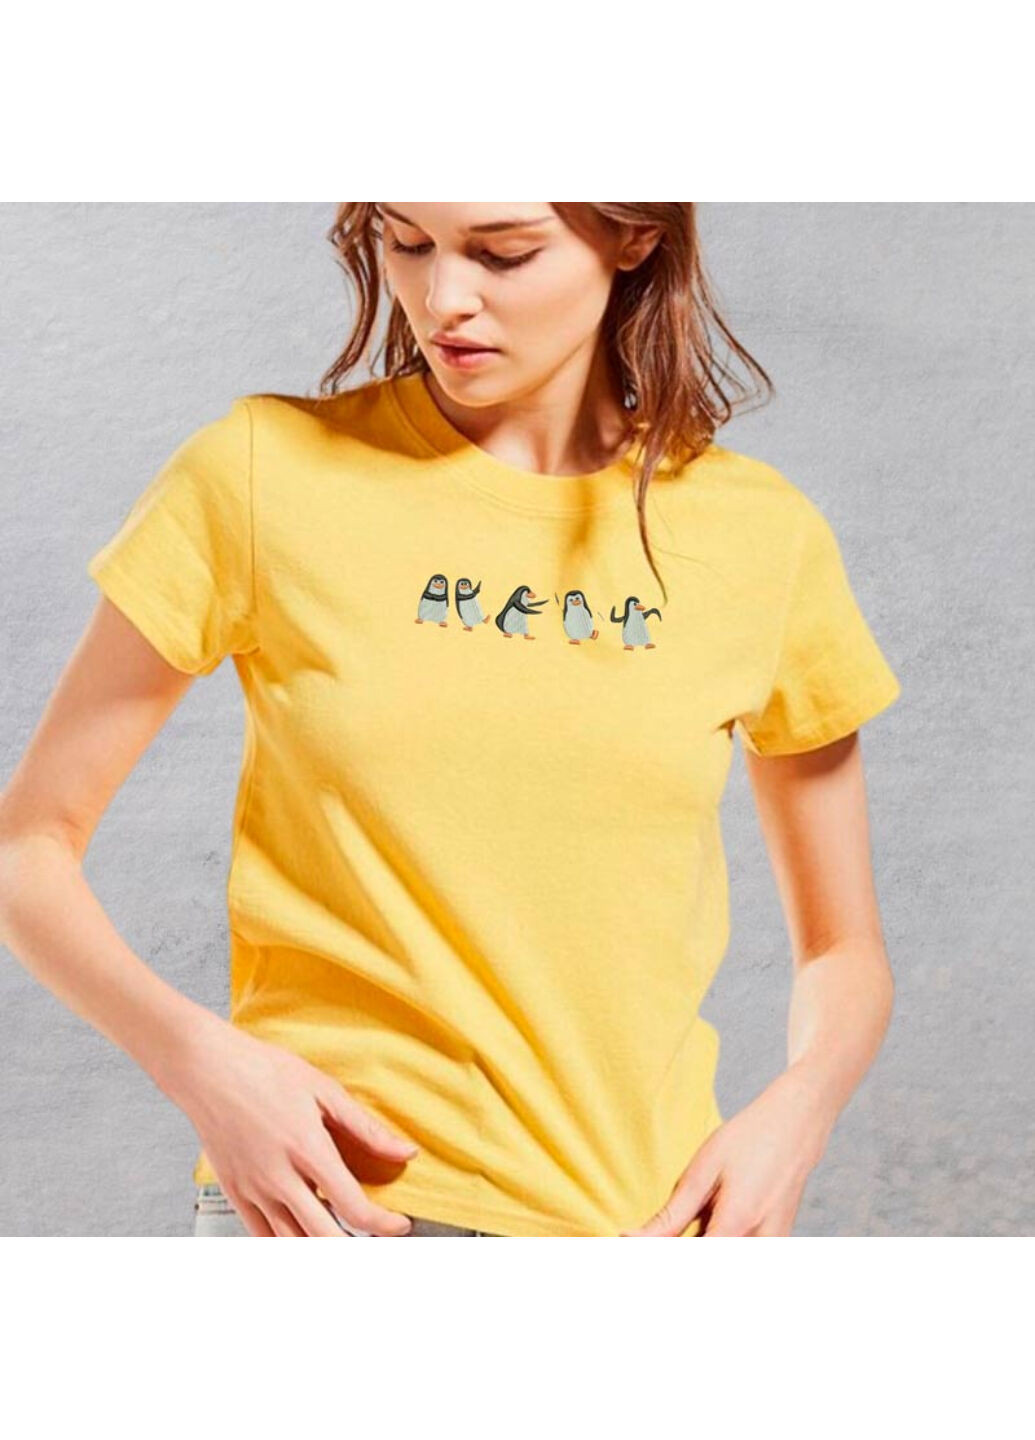 Жовта футболка з вишивкою пінгвінів 02-4 жіноча жовтий xl No Brand